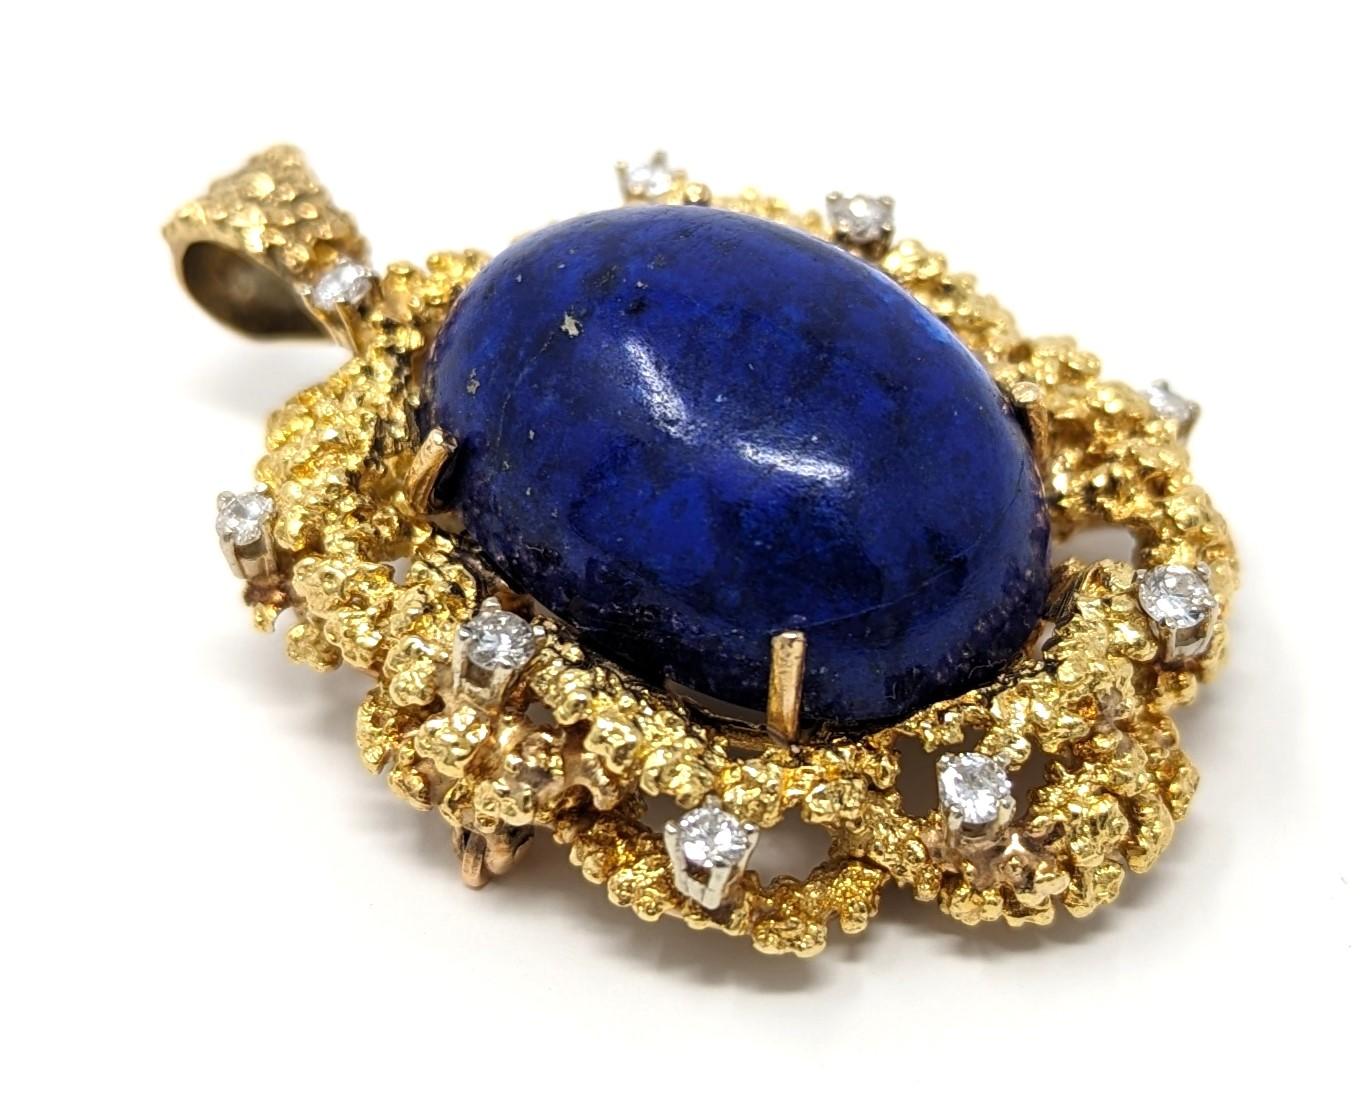 Exquis pendentif / broche convertible en lapis-lazuli 18k, orné de diamants éblouissants. Ce pendentif de style brutaliste est un excellent exemple de l'art et de l'artisanat du milieu du siècle. Estampillé 